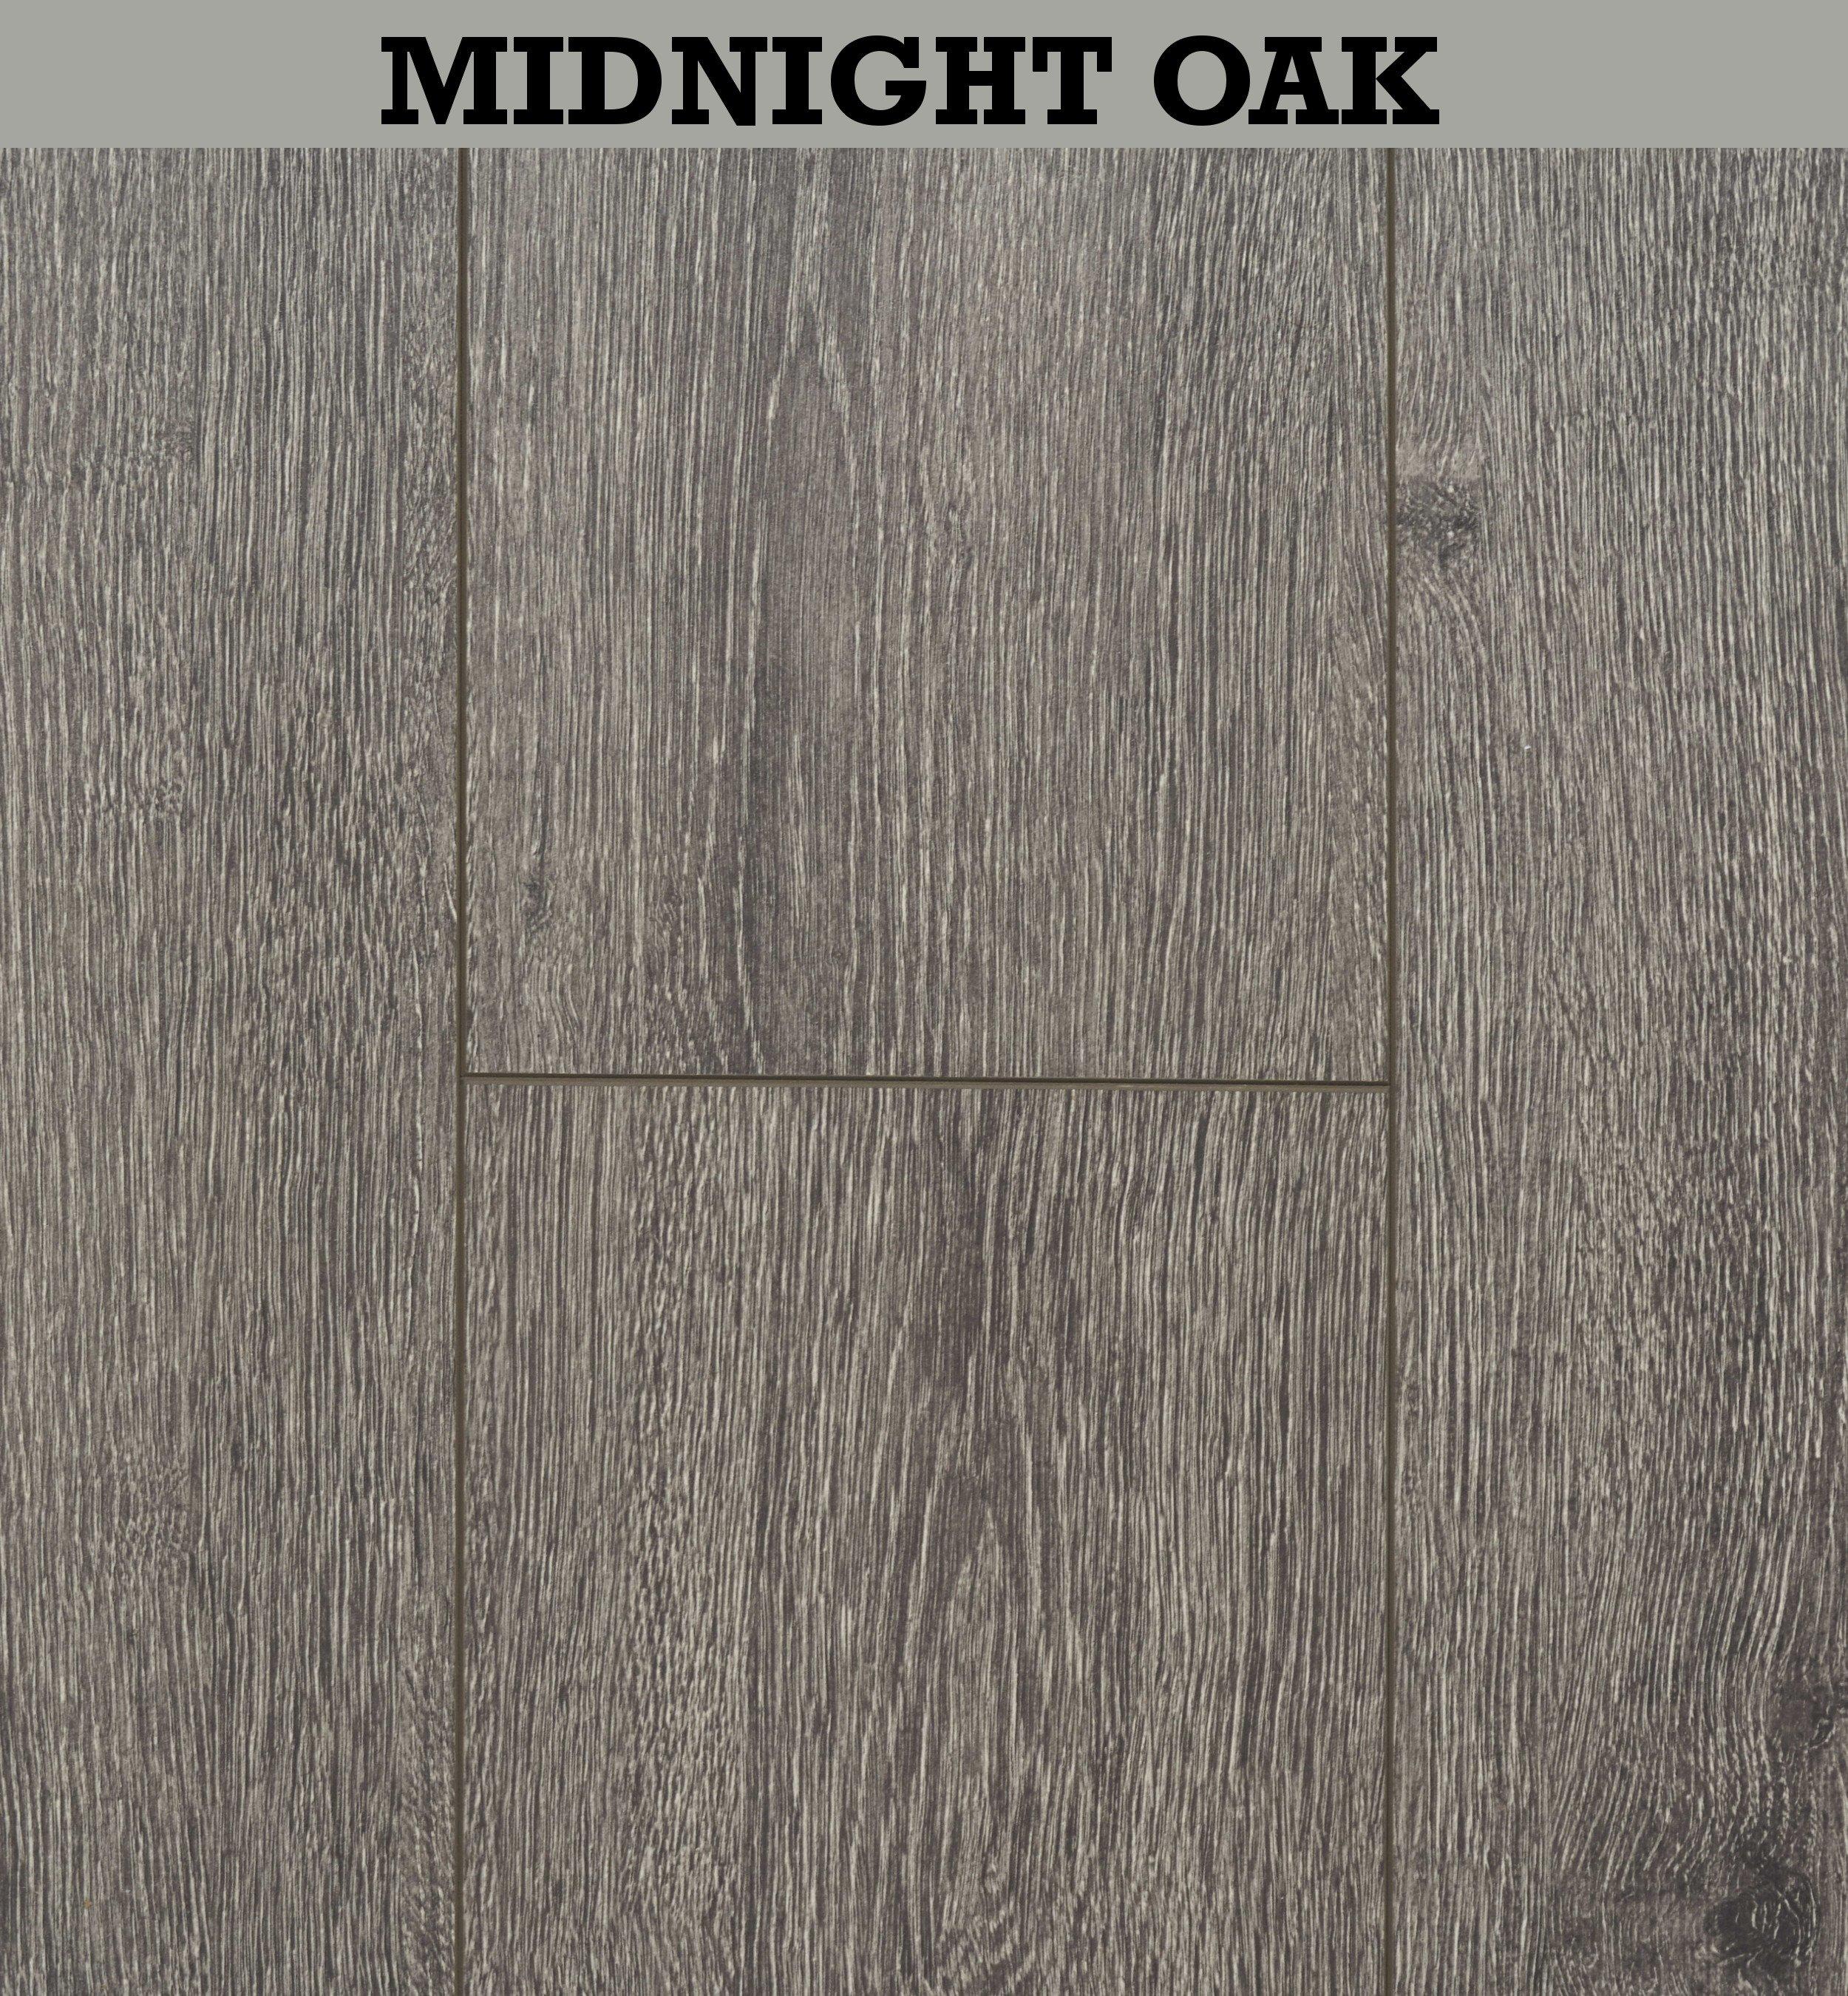 Vantage Click Midnight Oak 8mm Laminate Flooring